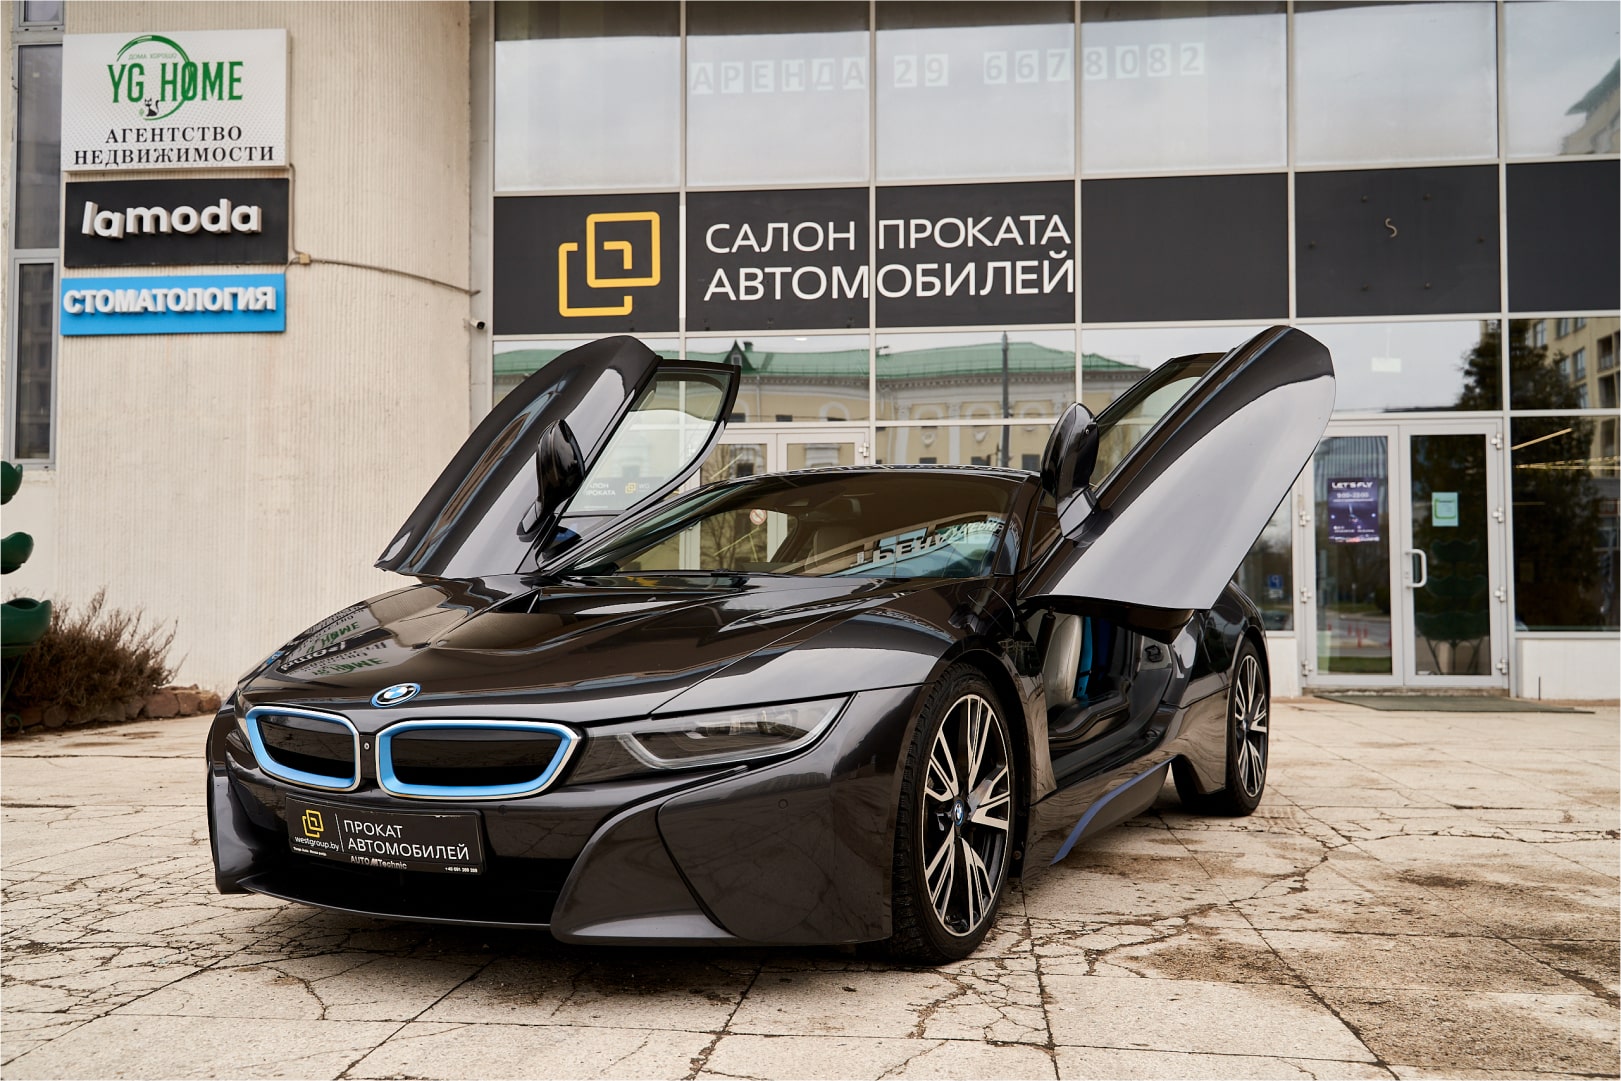 Аренда  BMW i8 (I12) купе  4 класса 2017 года в городе Минск от 260 $/сутки,  двигатель: Электро , объем 1.5 + 105 KW литров, КАСКО (Мультидрайв), без водителя, вид 1 - West Group